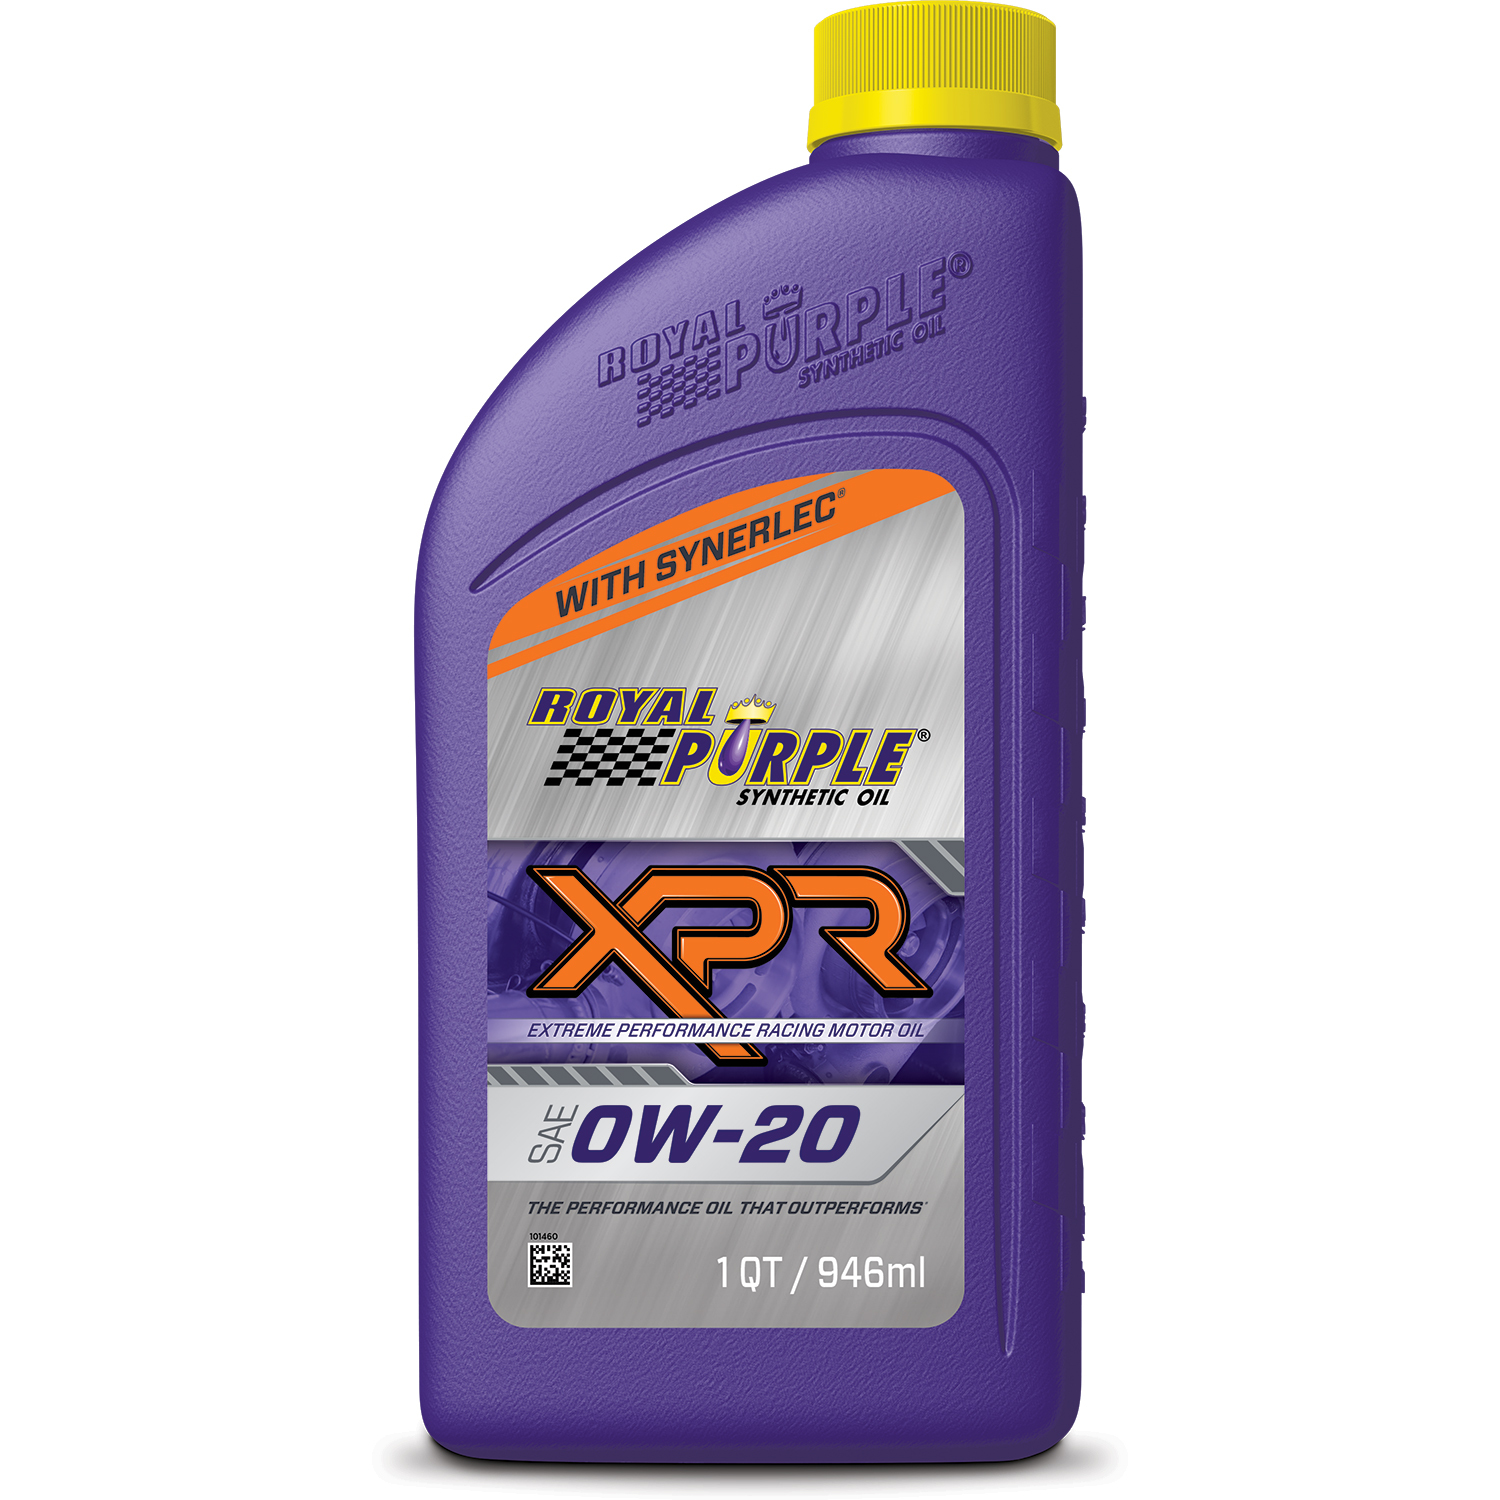 ROYAL PURPLE Motor Oil XPR 0W20 Synthetic 1 qt Bottle Each